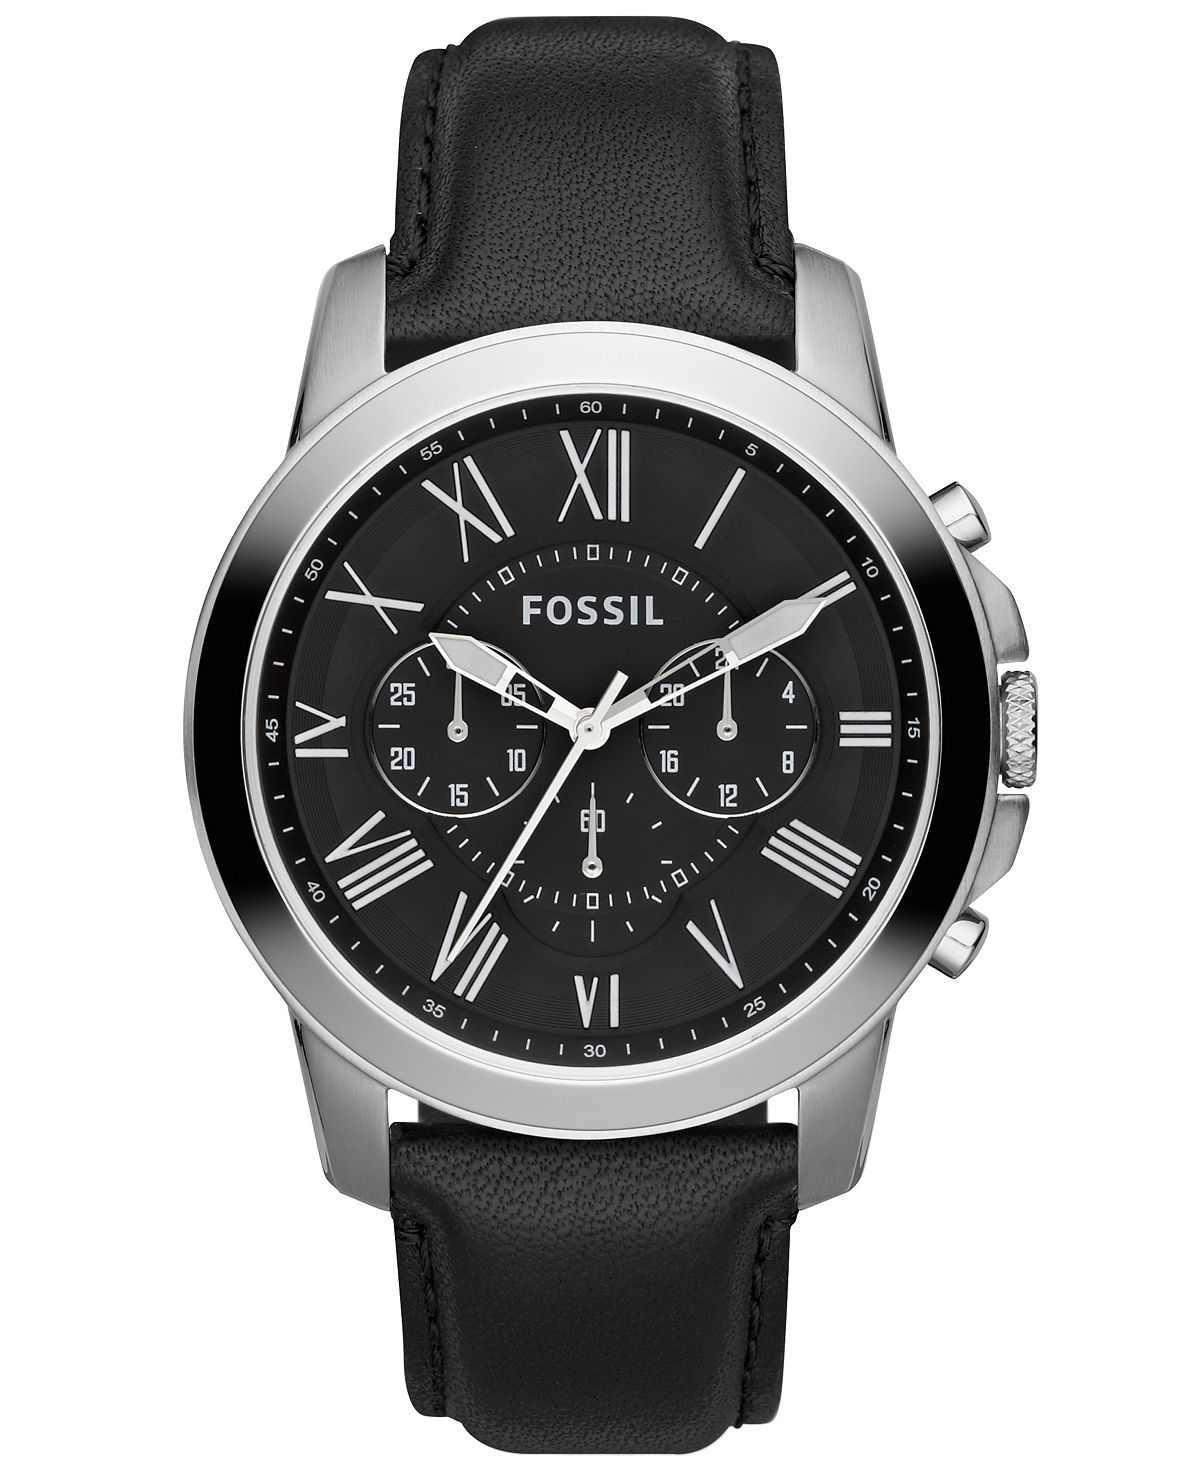 Мужские часы с хронографом Grant с черным кожаным ремешком 44 мм FS4812 Fossil fossil grant fs4835